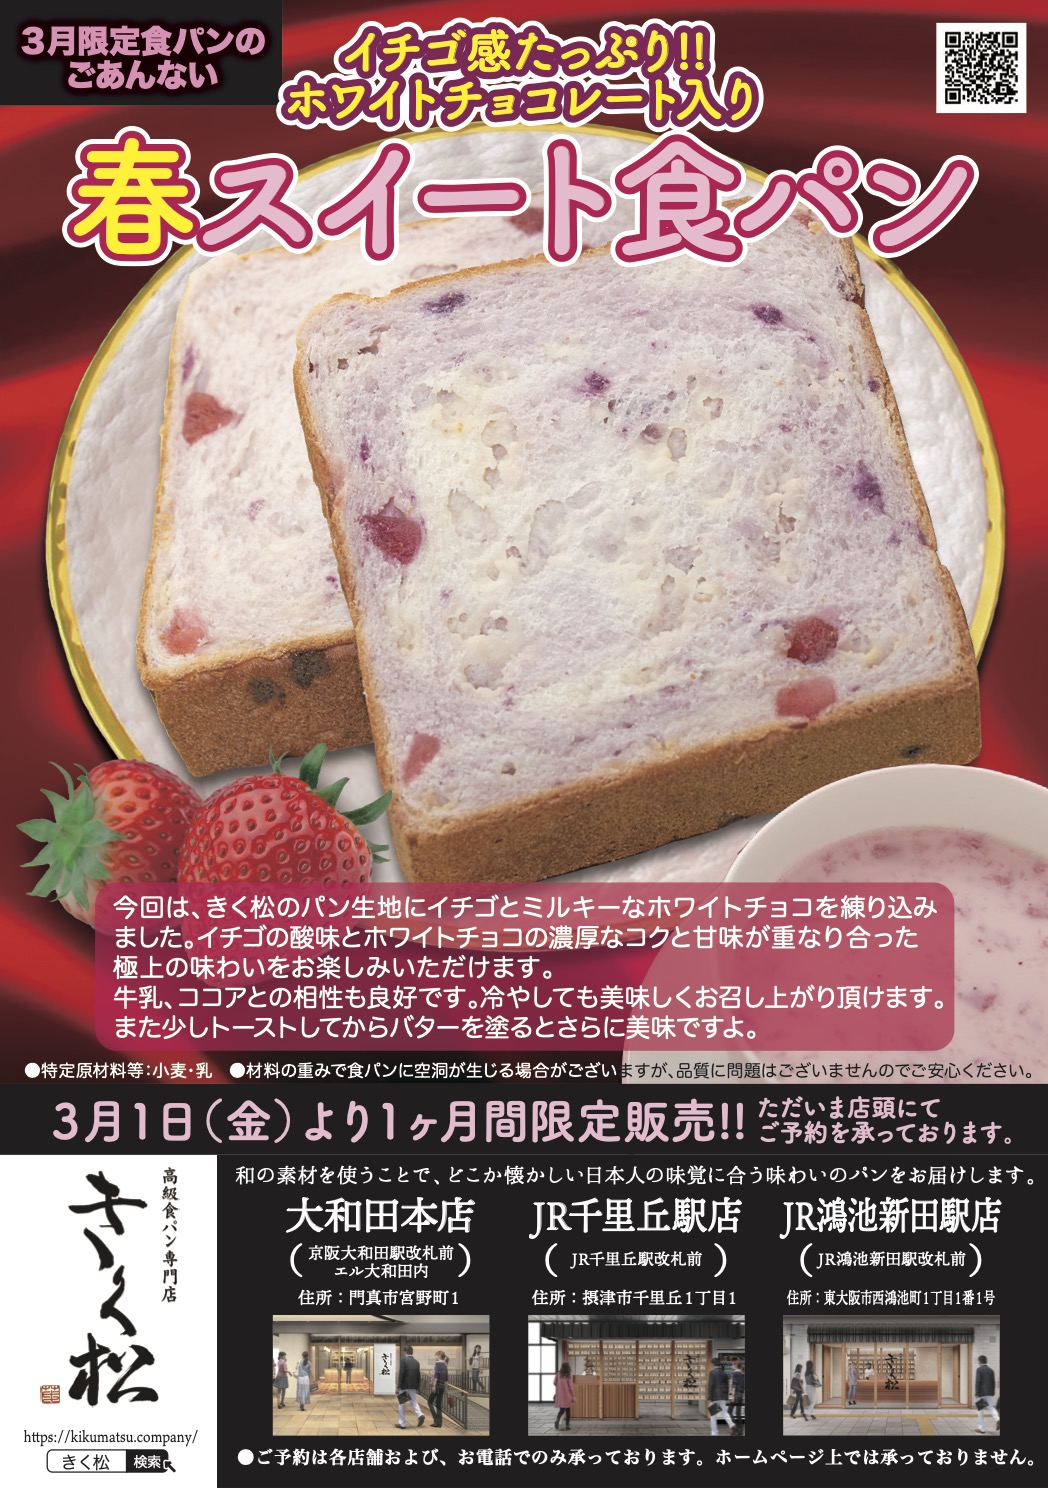 3月の限定食パンは【イチゴ感たっぷり!! ホワイトチョコレート入り 春スイート食パン】